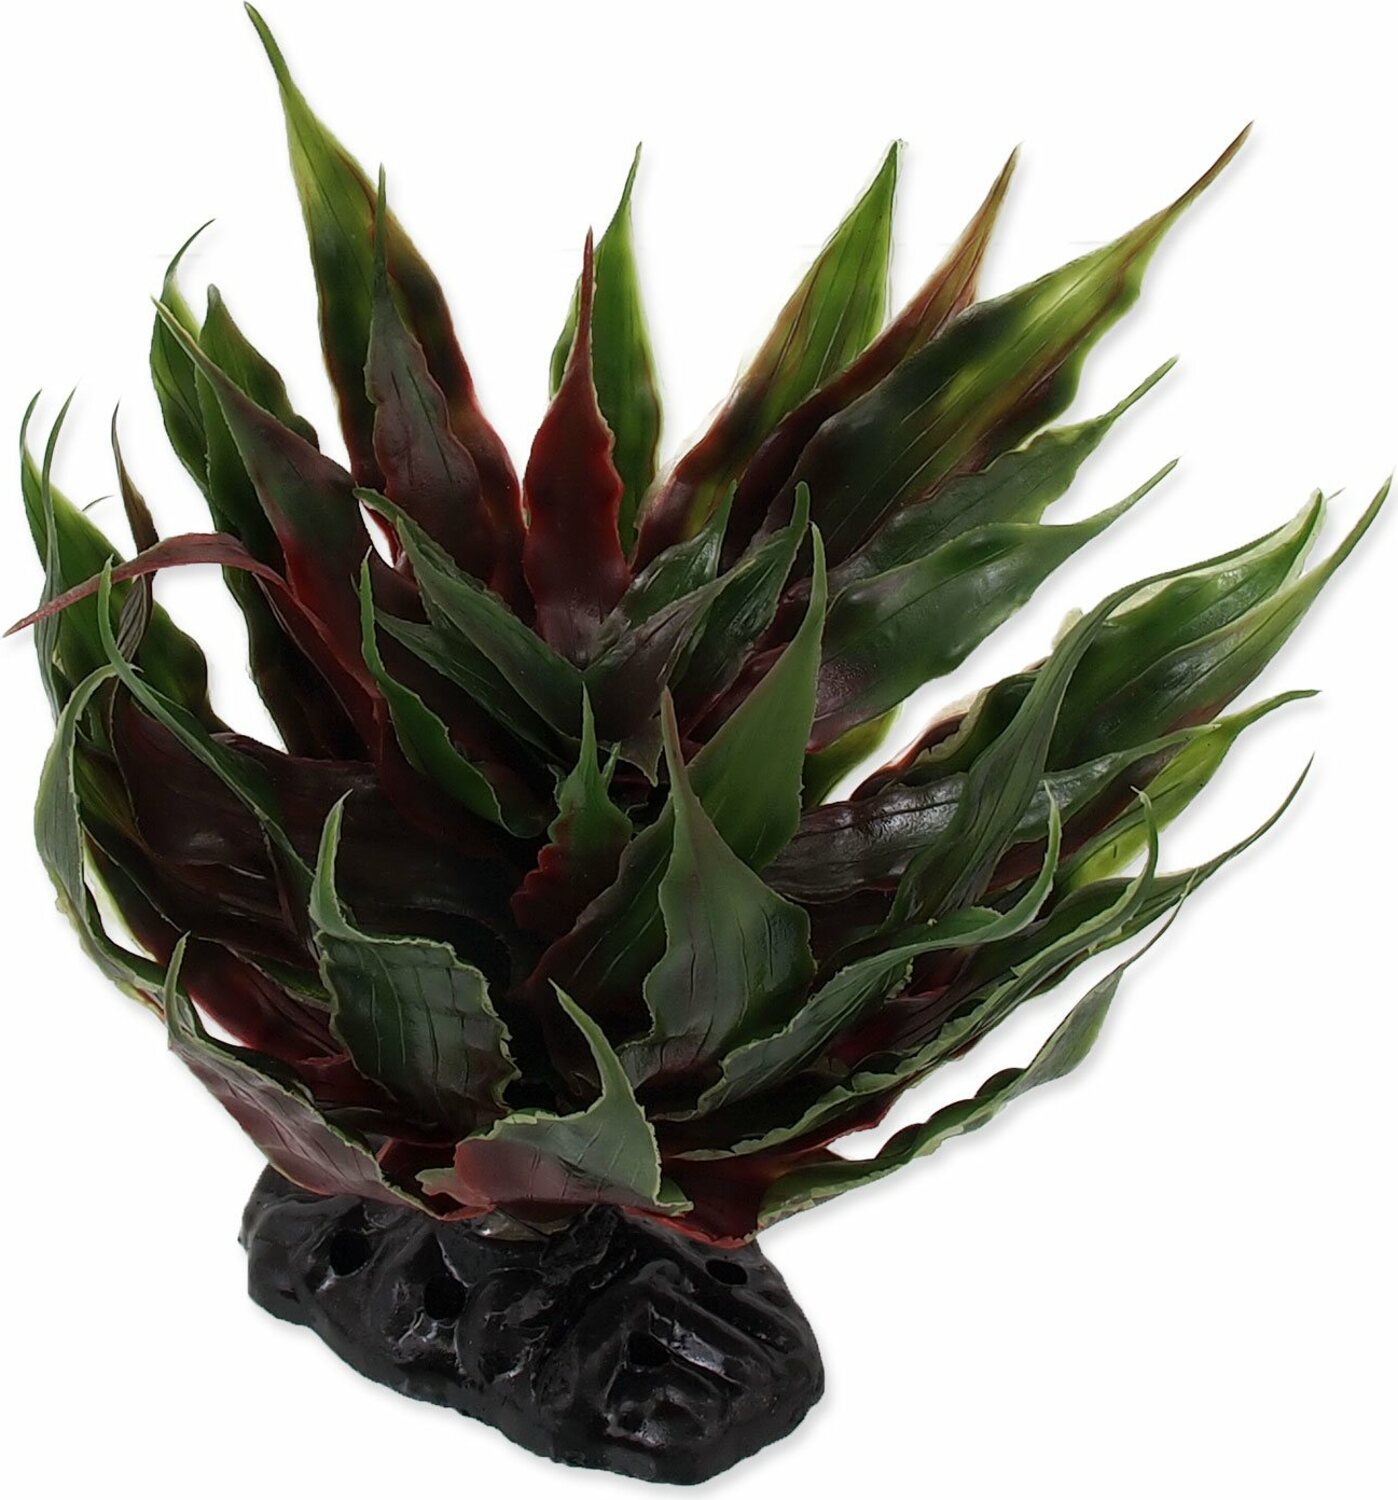 Dekorace Repti Planet Rostlina sukulent Agave zelená 18cm